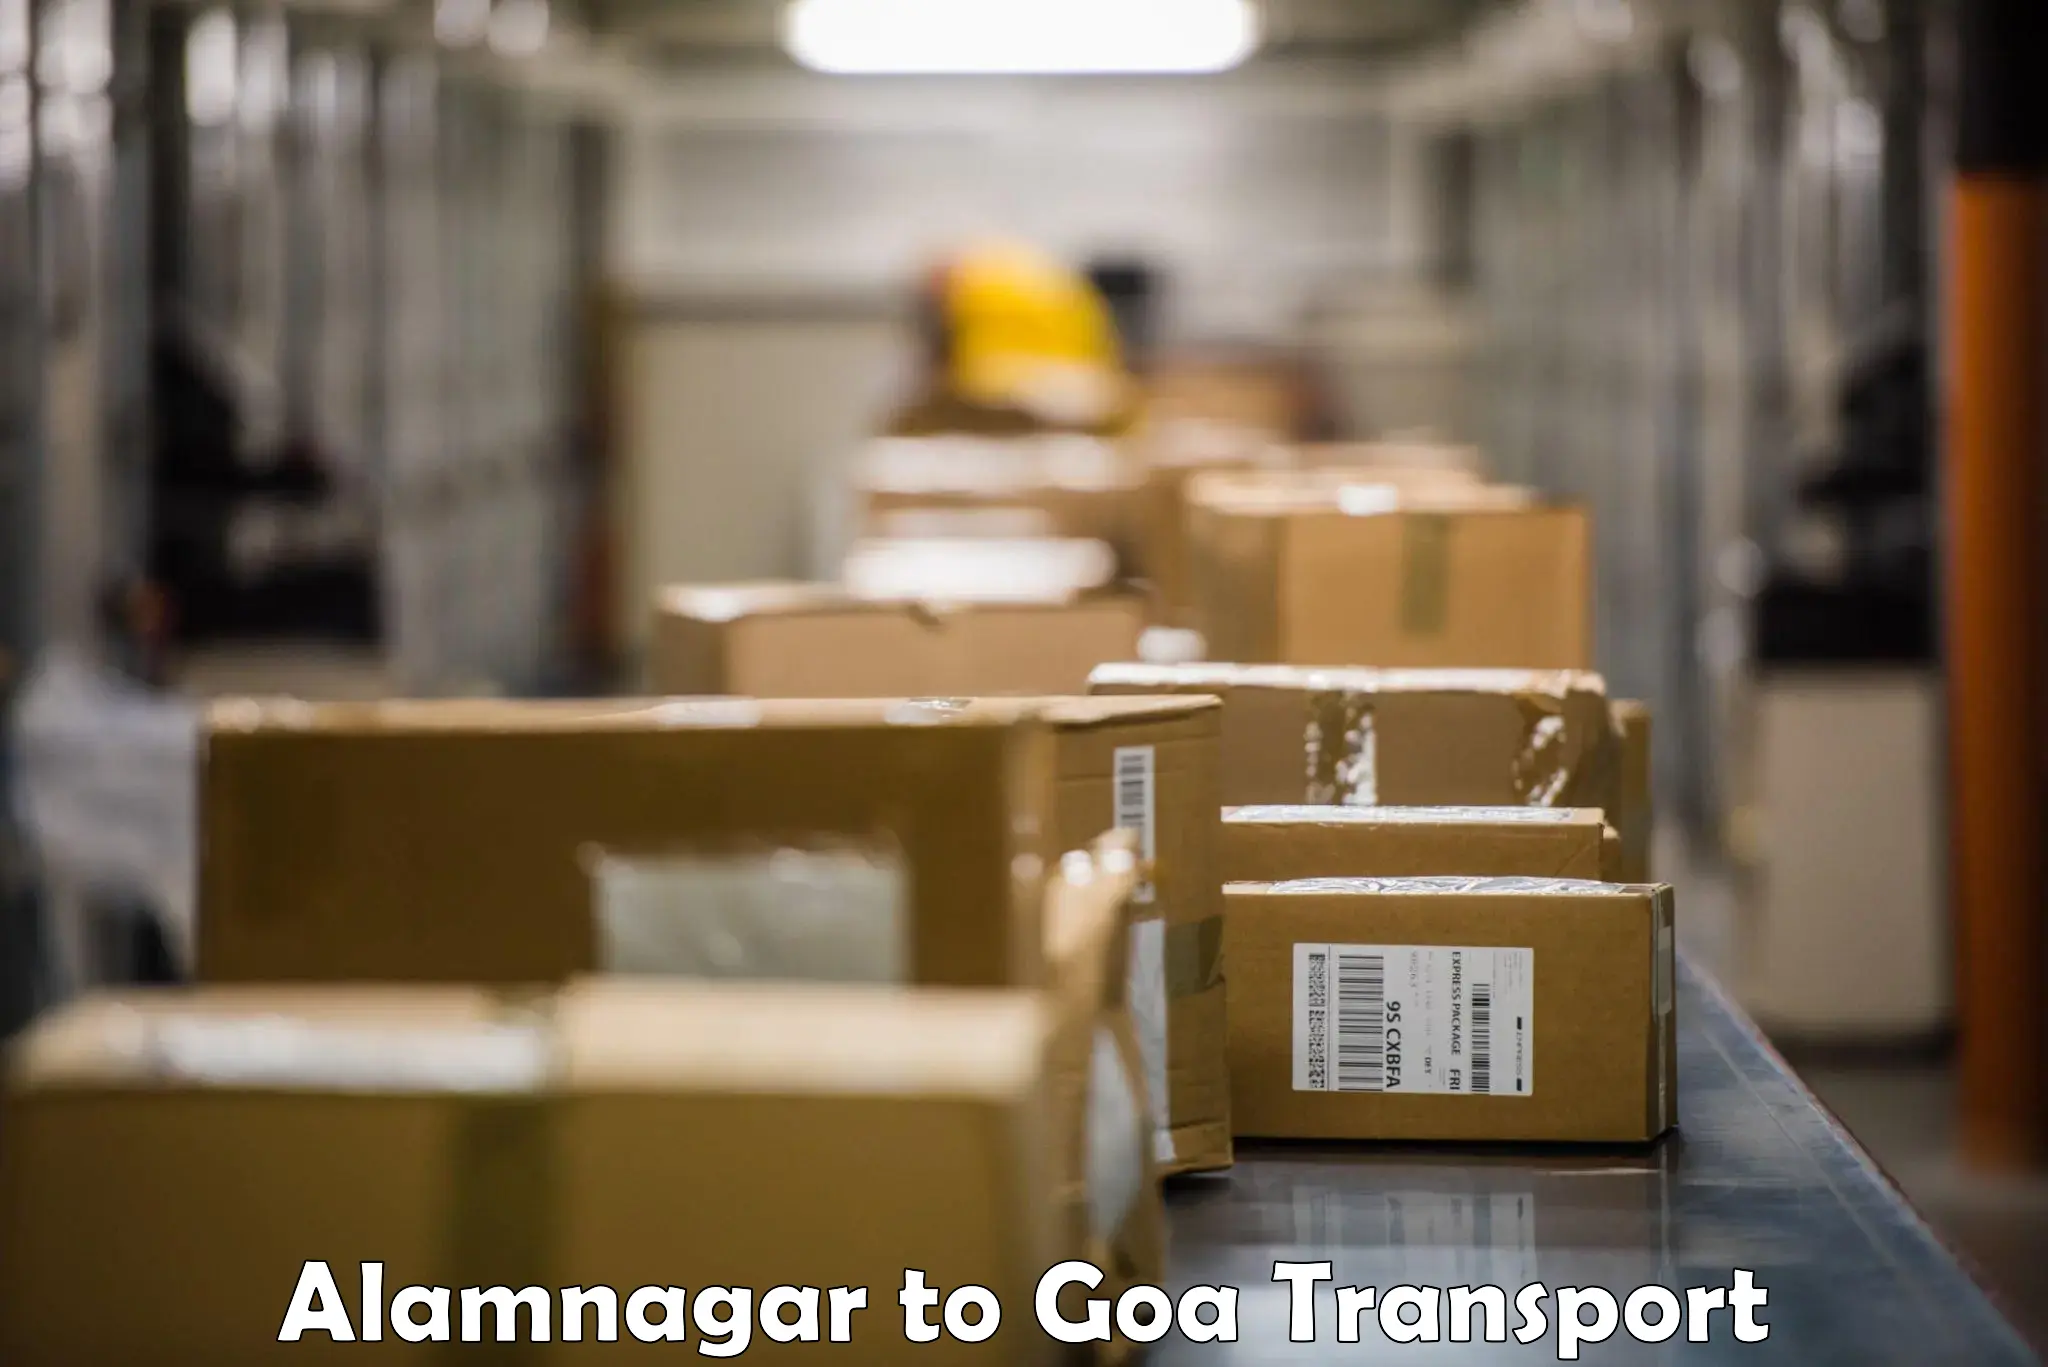 Express transport services Alamnagar to Panjim